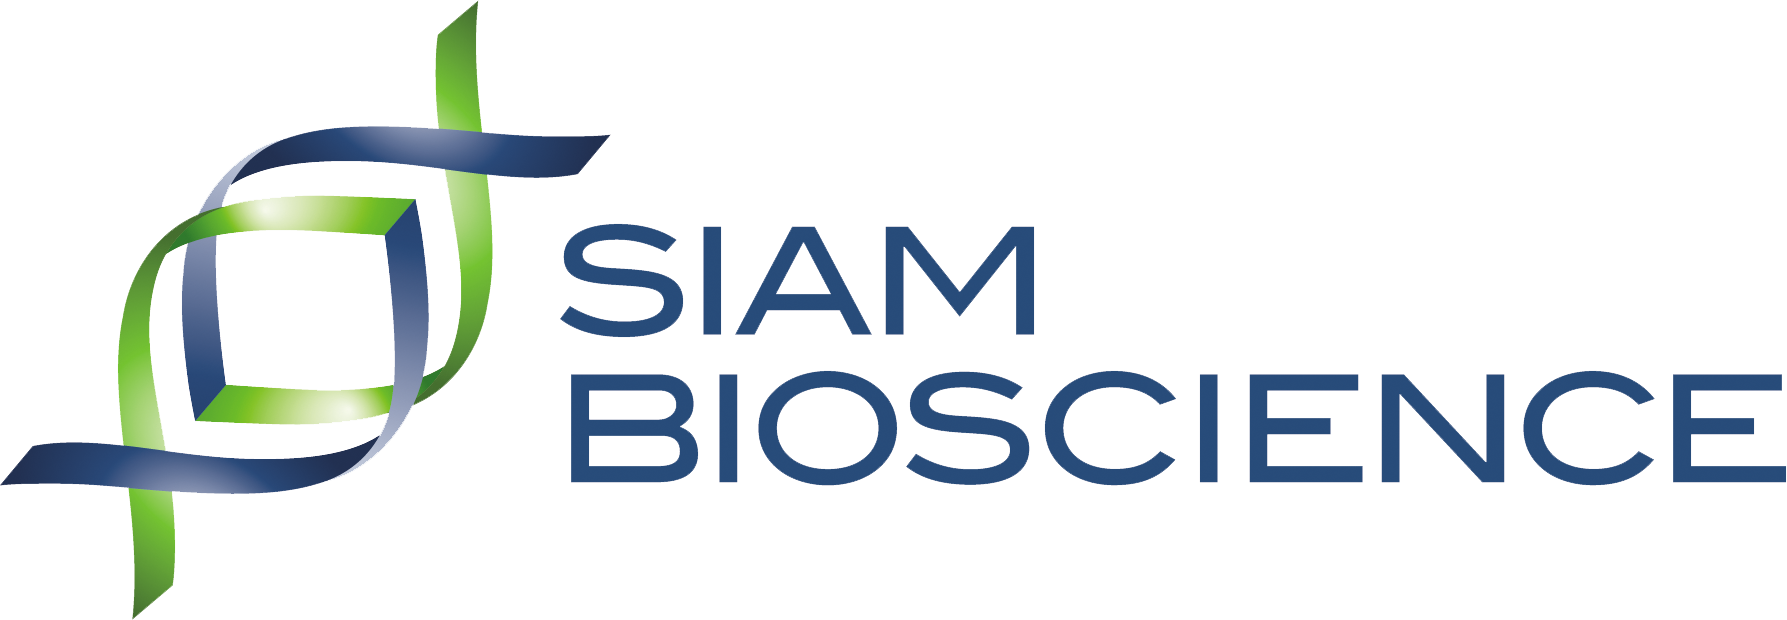 Siambioscience Co., Ltd.